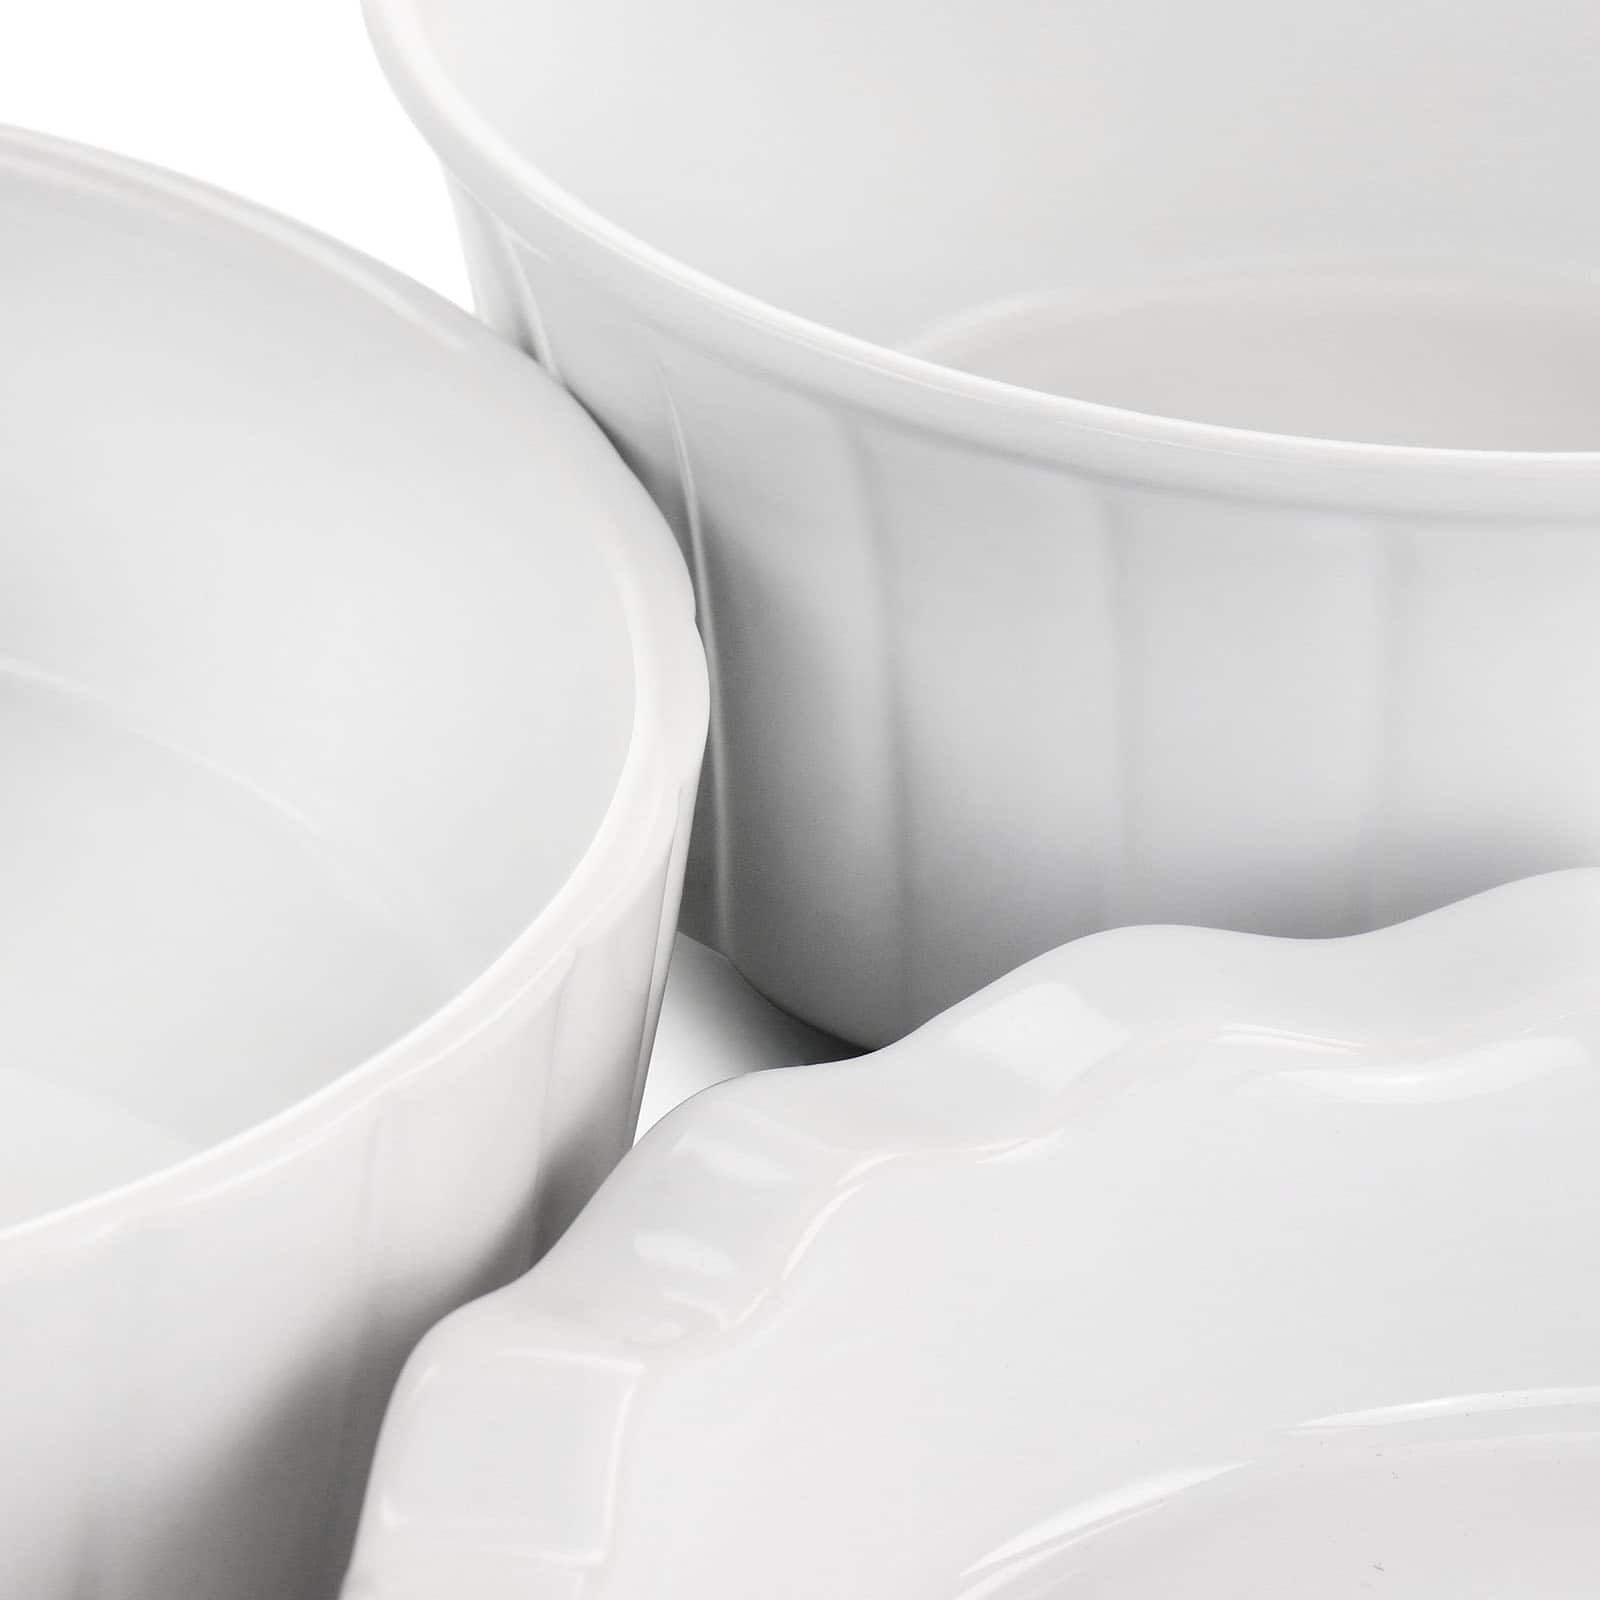 Gibson Elite&#xAE; White Ceramic Bakeware Set